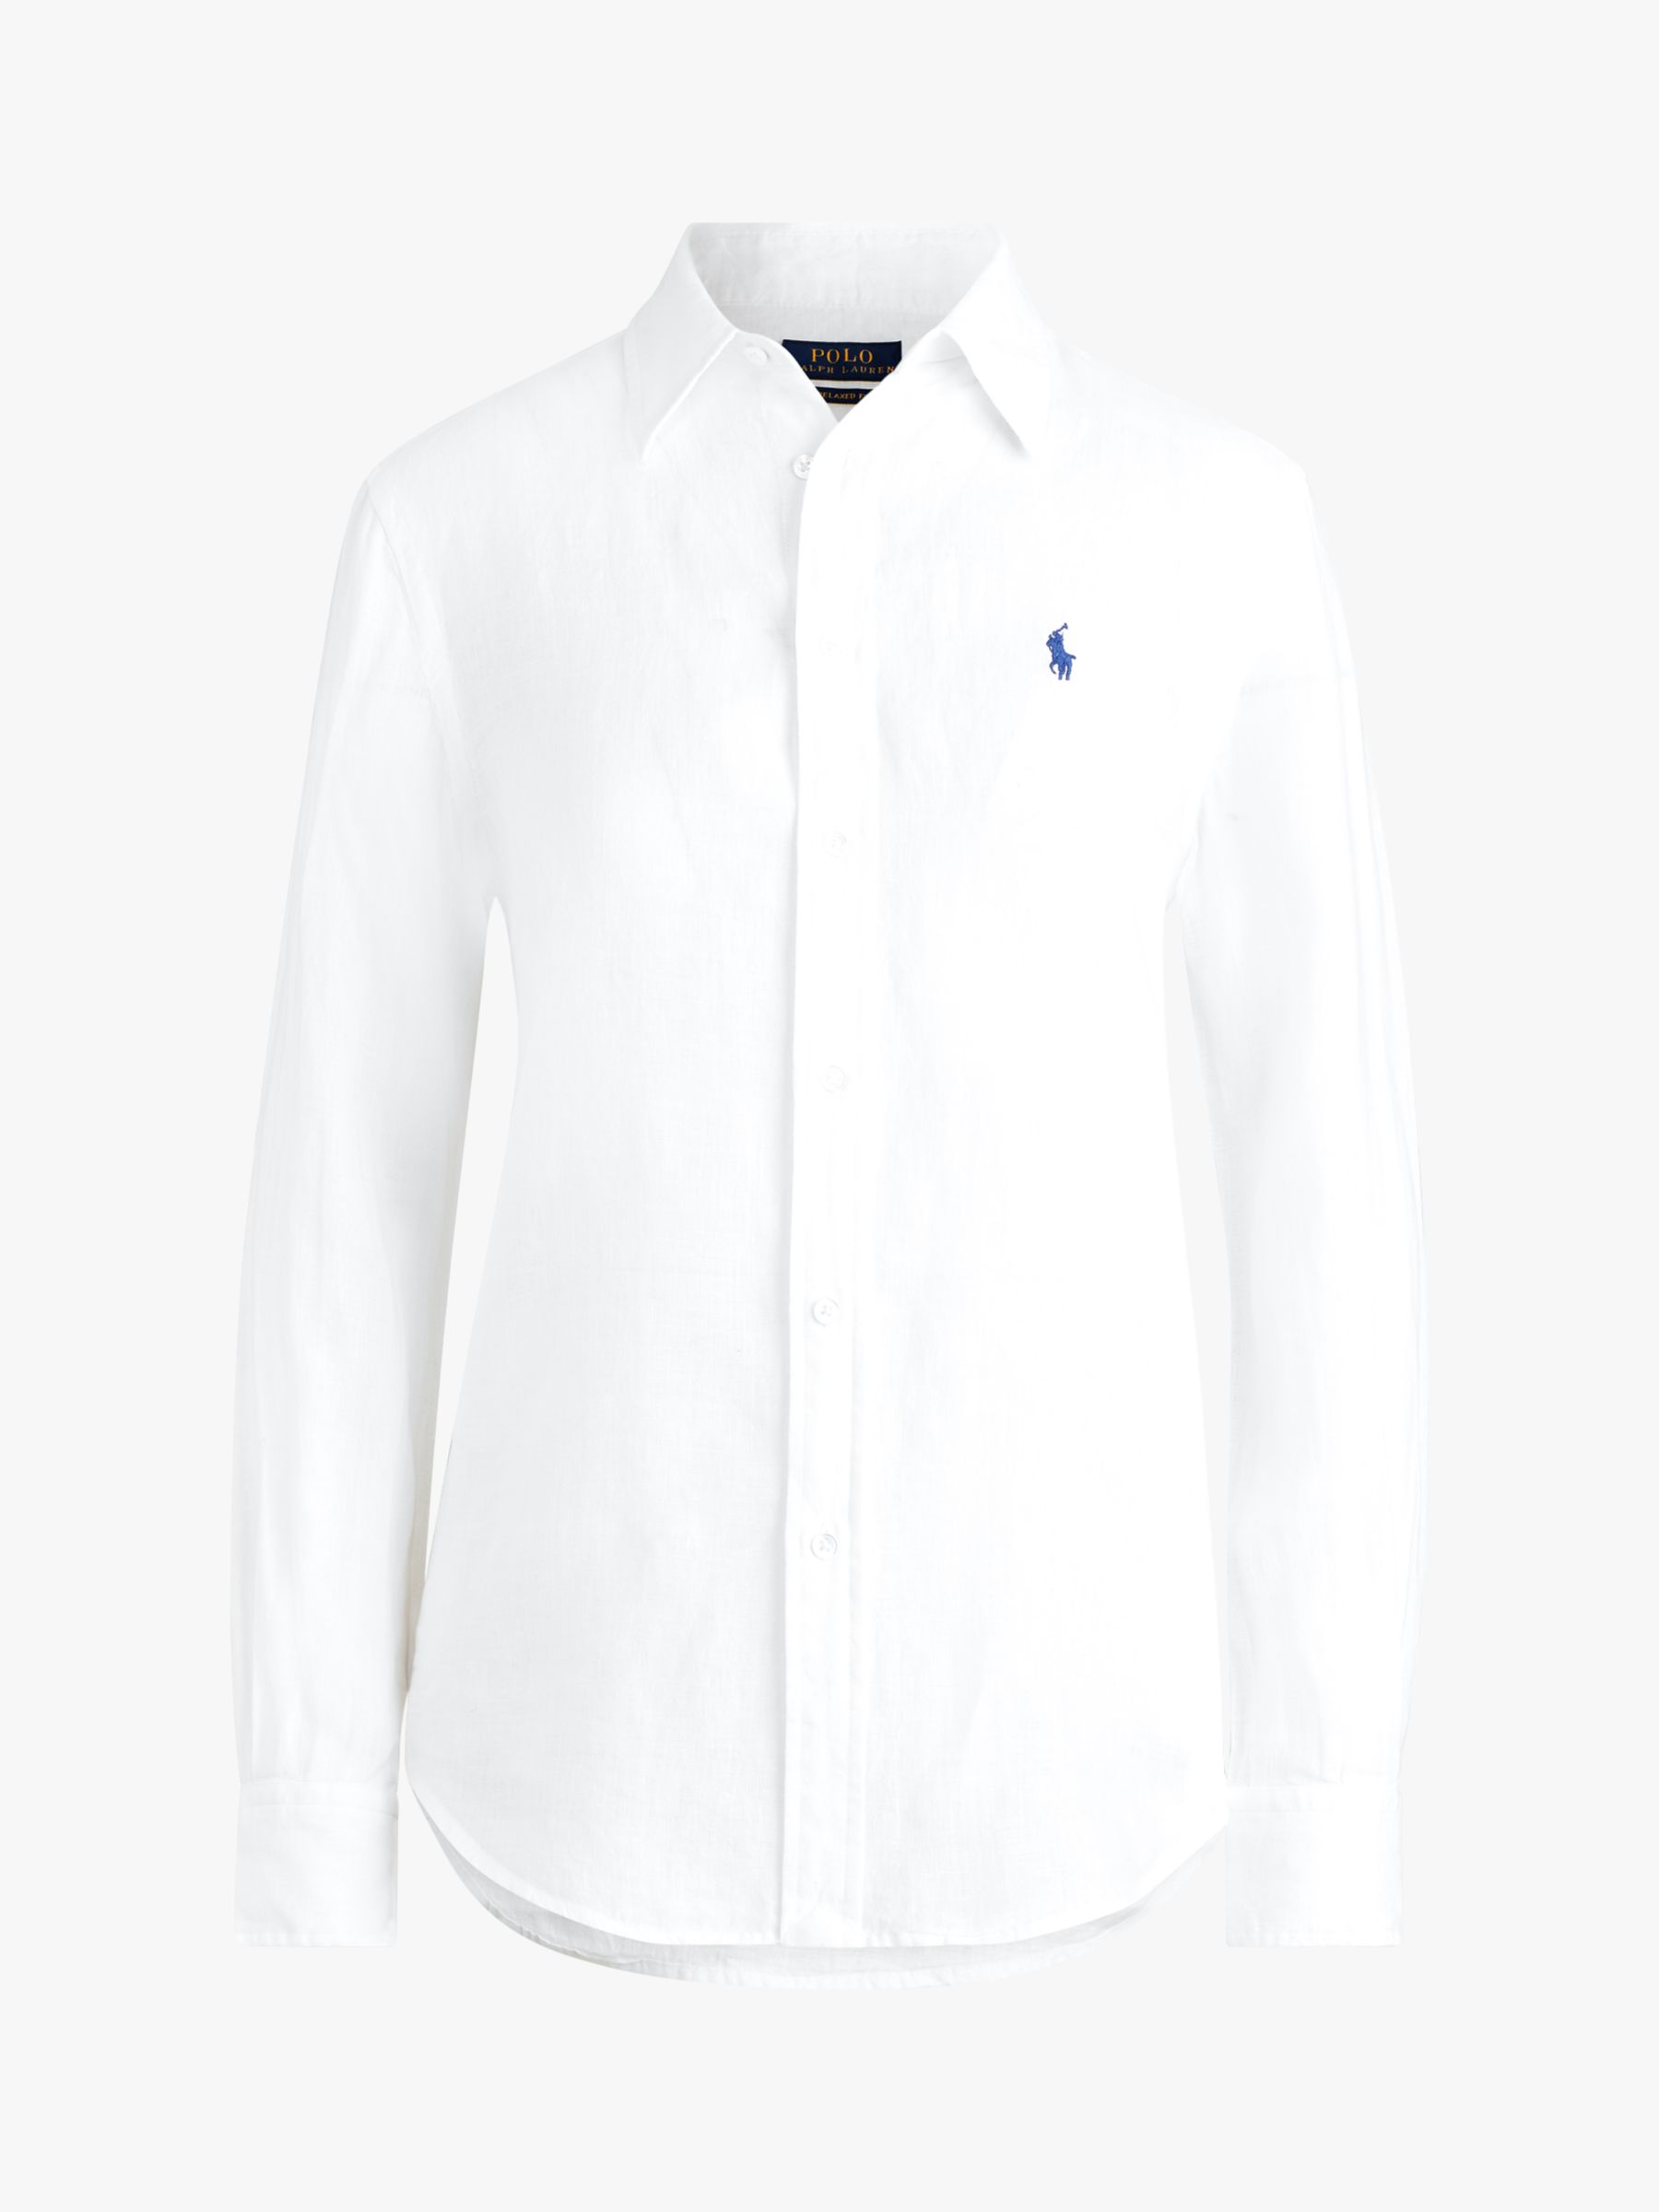 ralph lauren white linen shirt womens